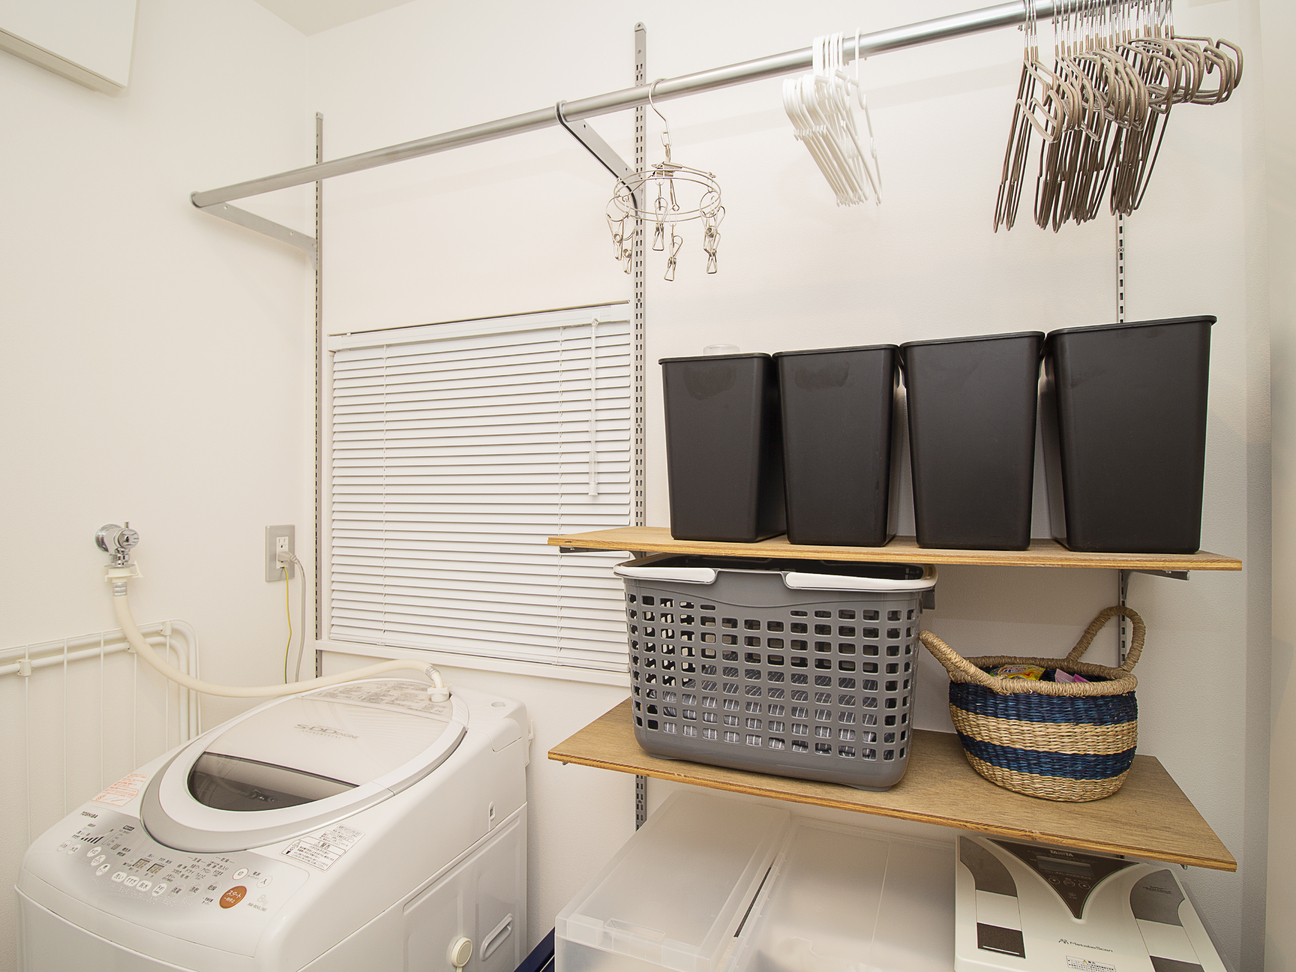 洗面所 脱衣所の収納計画に最適な可動収納システム シューノ19 株式会社ロイヤル 9142 建材トレンド